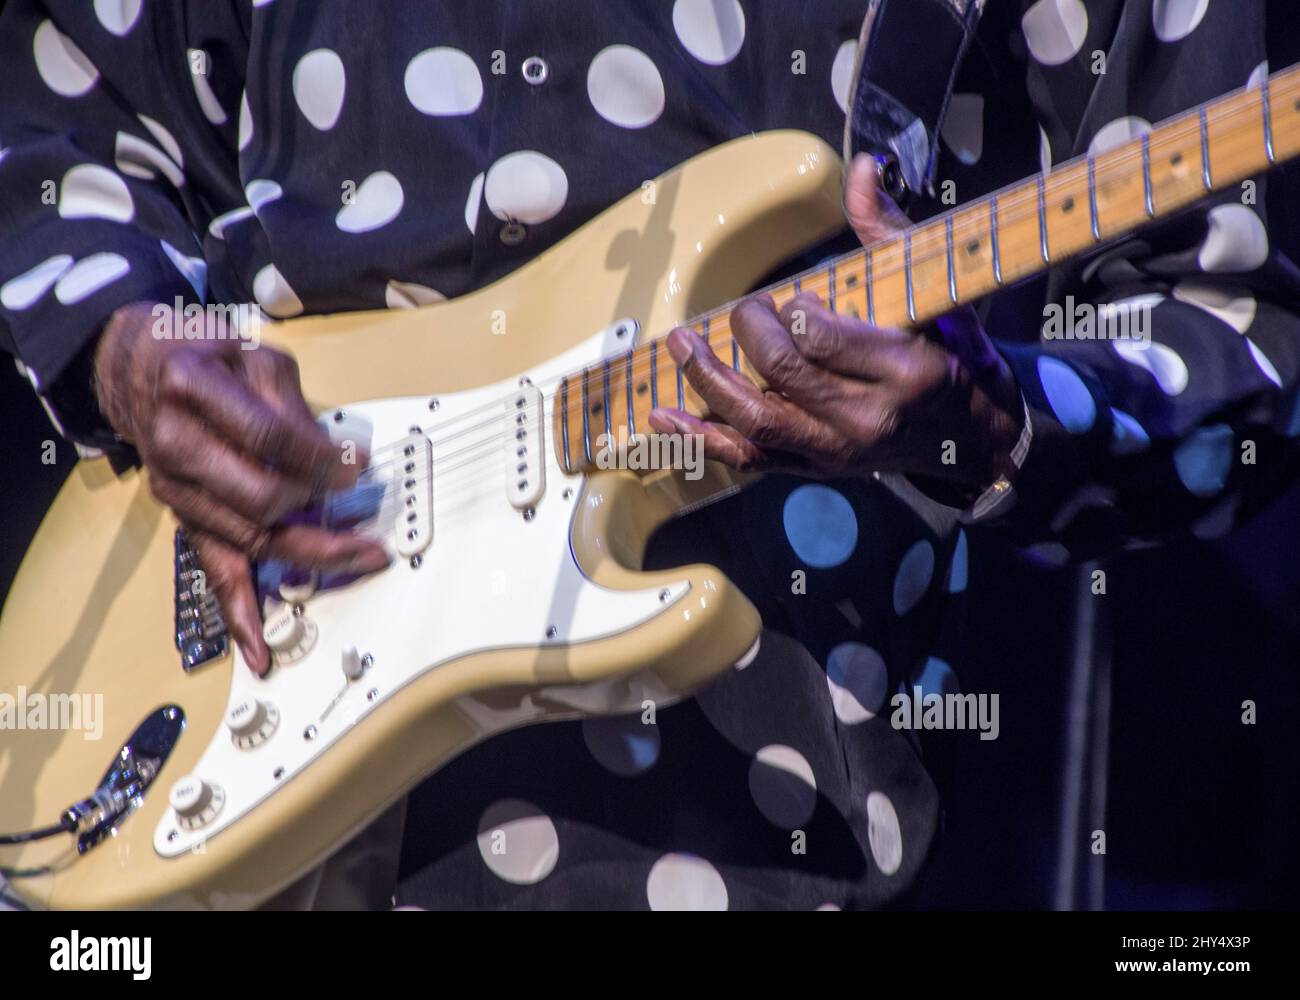 Gros plan des mains du bluesman américain Buddy Guy lors d'un concert à la salle Pleyel, Paris, France, le 6 novembre 2018. Banque D'Images